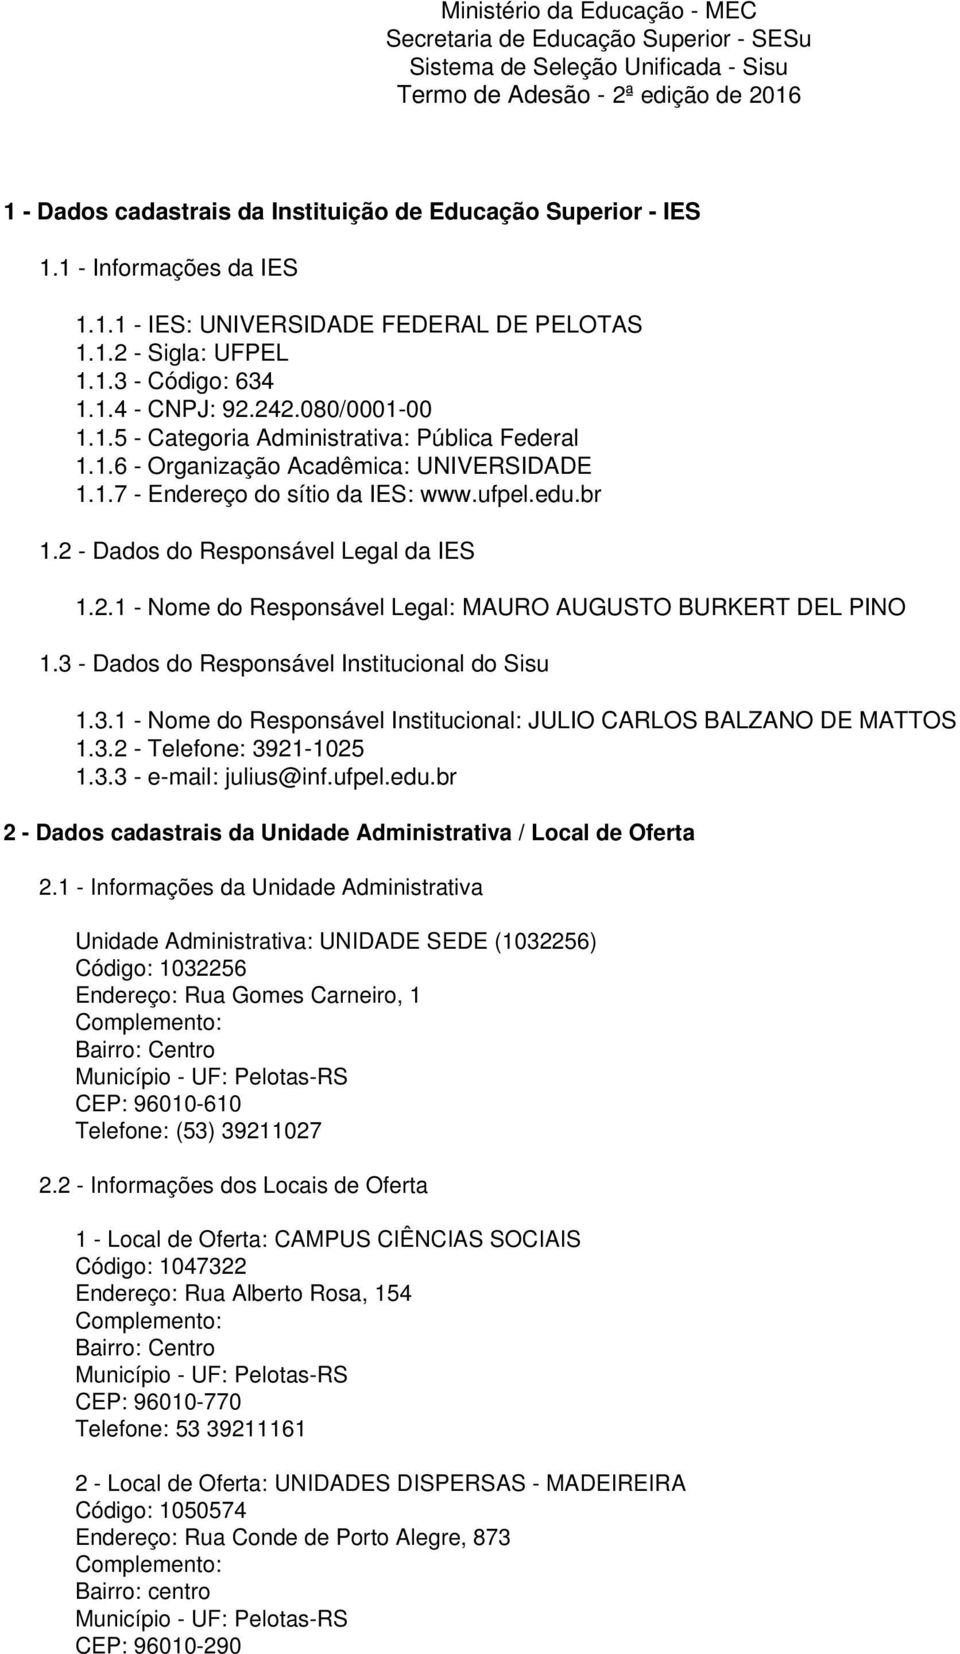 1.6 - Organização Acadêmica: UNIVERSIDADE 1.1.7 - Endereço do sítio da IES: www.ufpel.edu.br 1.2 - Dados do Responsável Legal da IES 1.2.1 - Nome do Responsável Legal: MAURO AUGUSTO BURKERT DEL PINO 1.